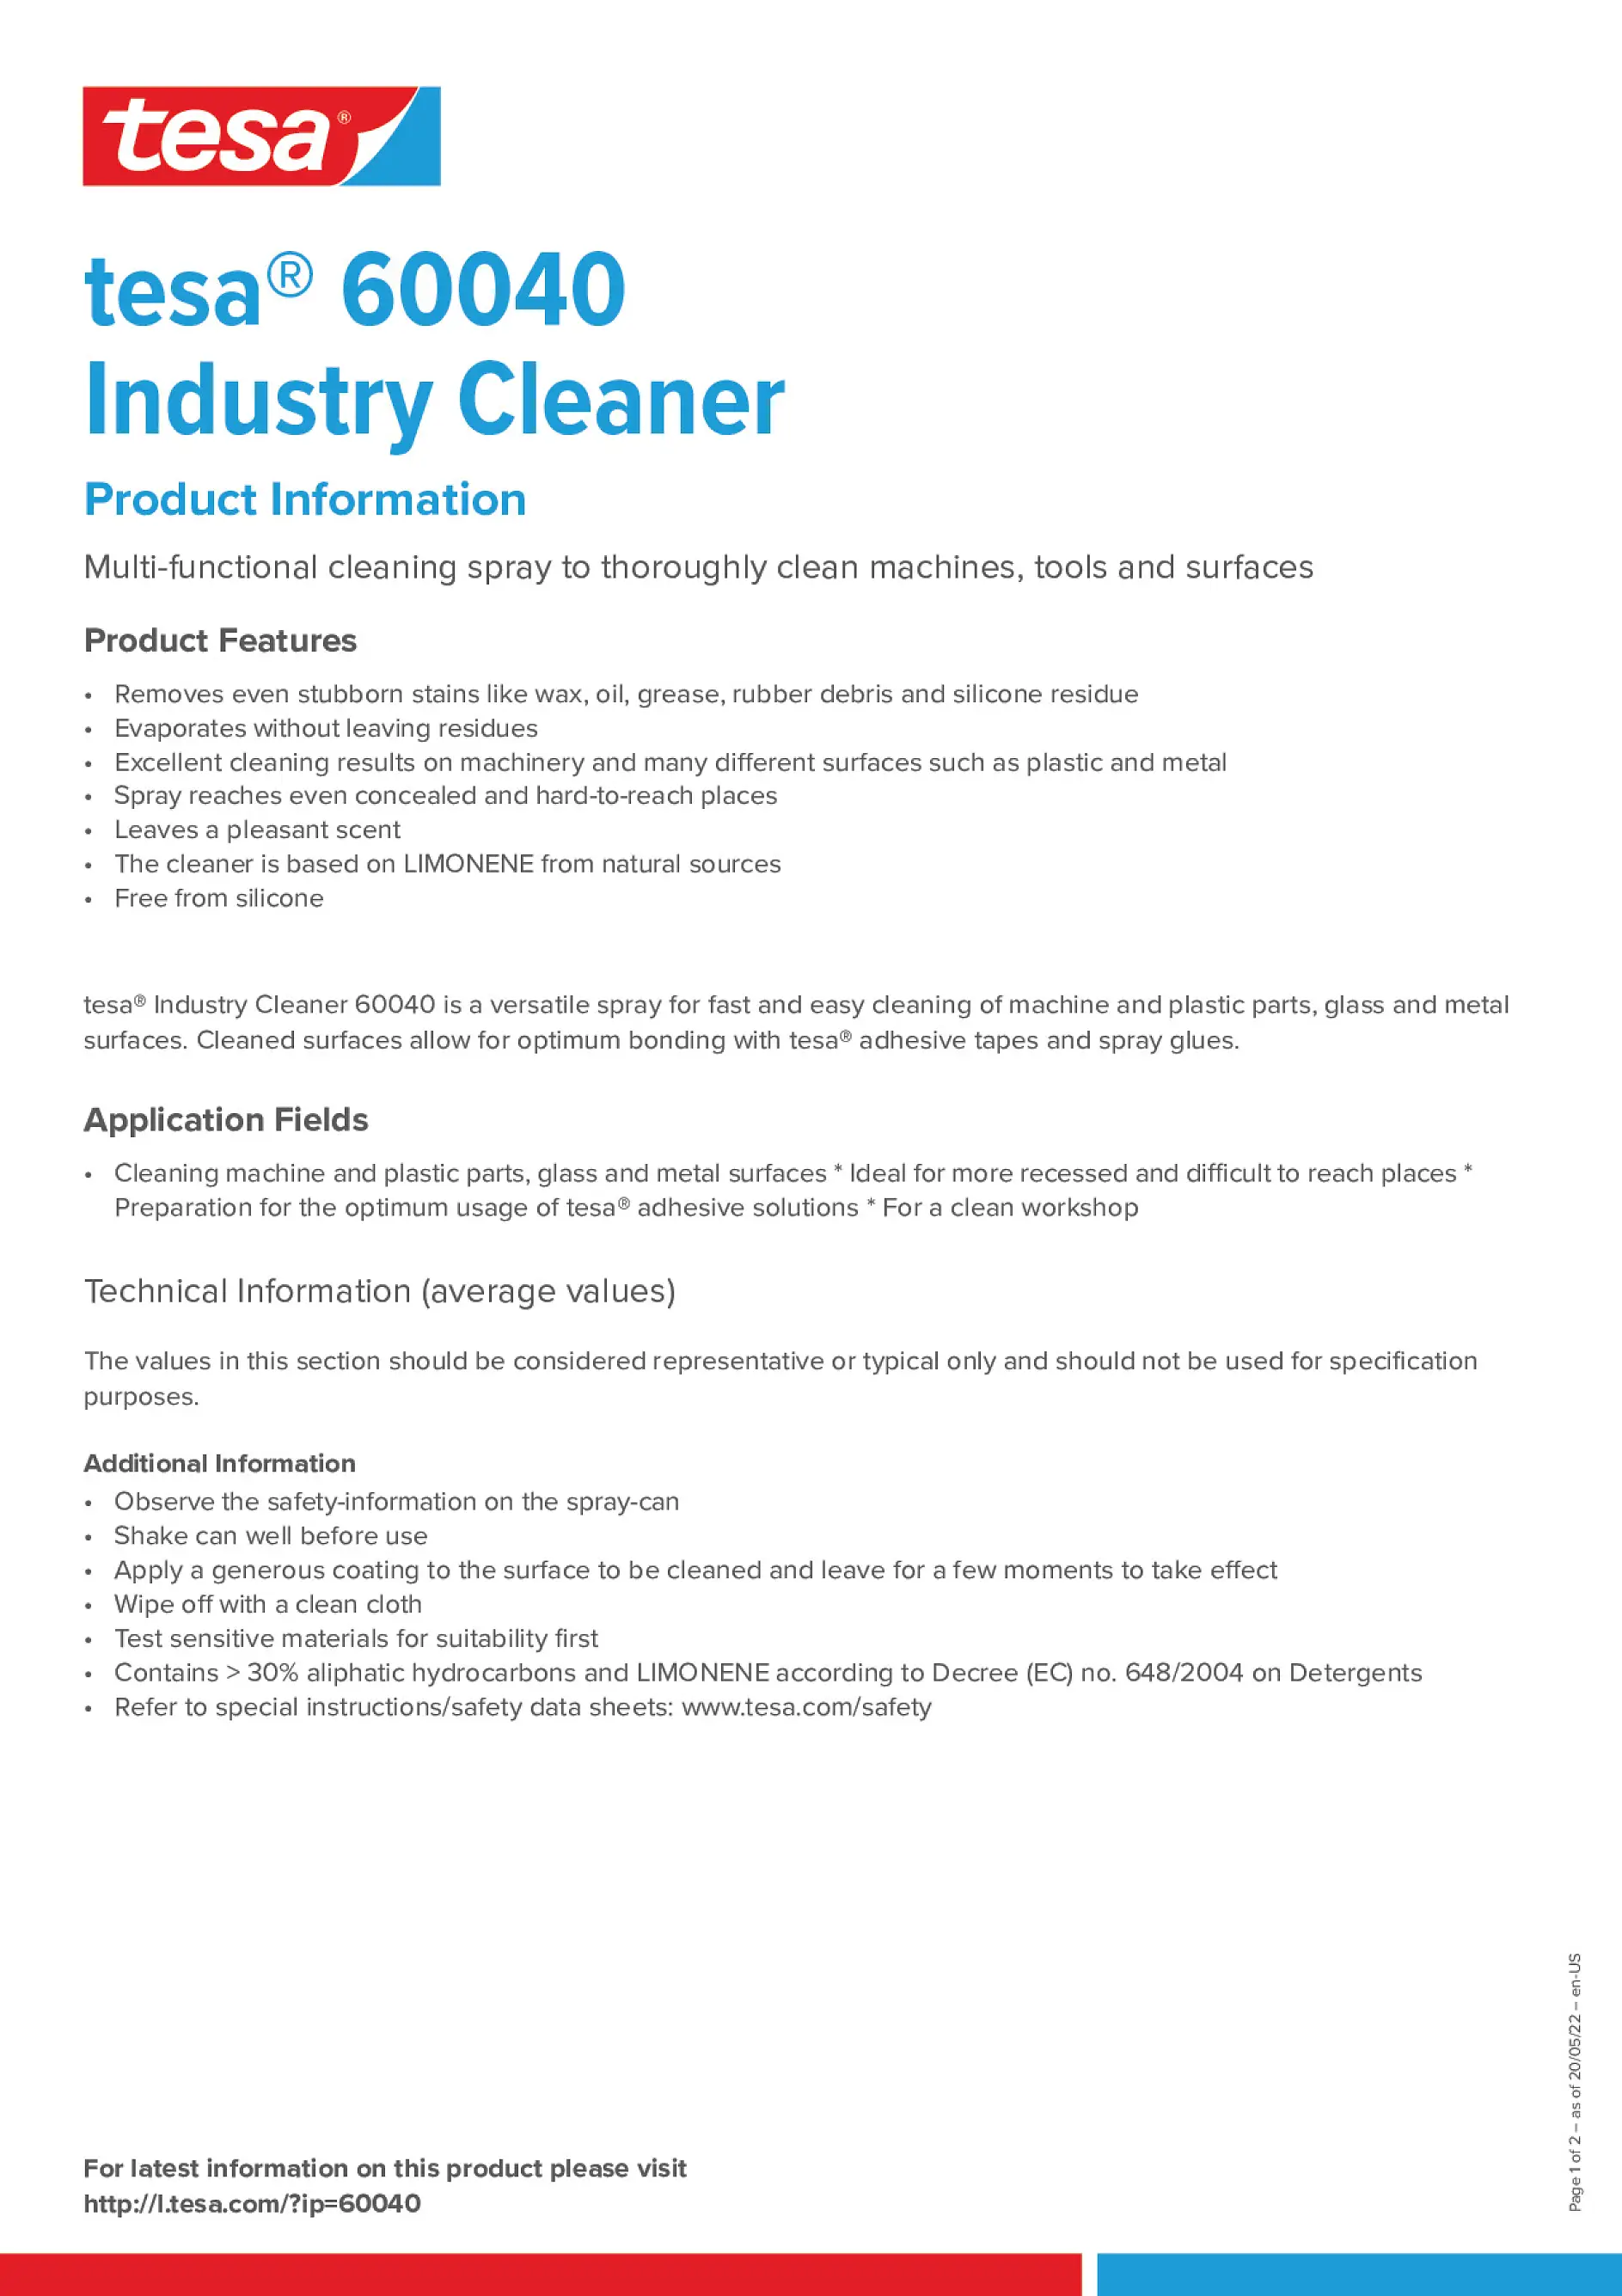 tesa_60040_Industry_Cleaner_en-US